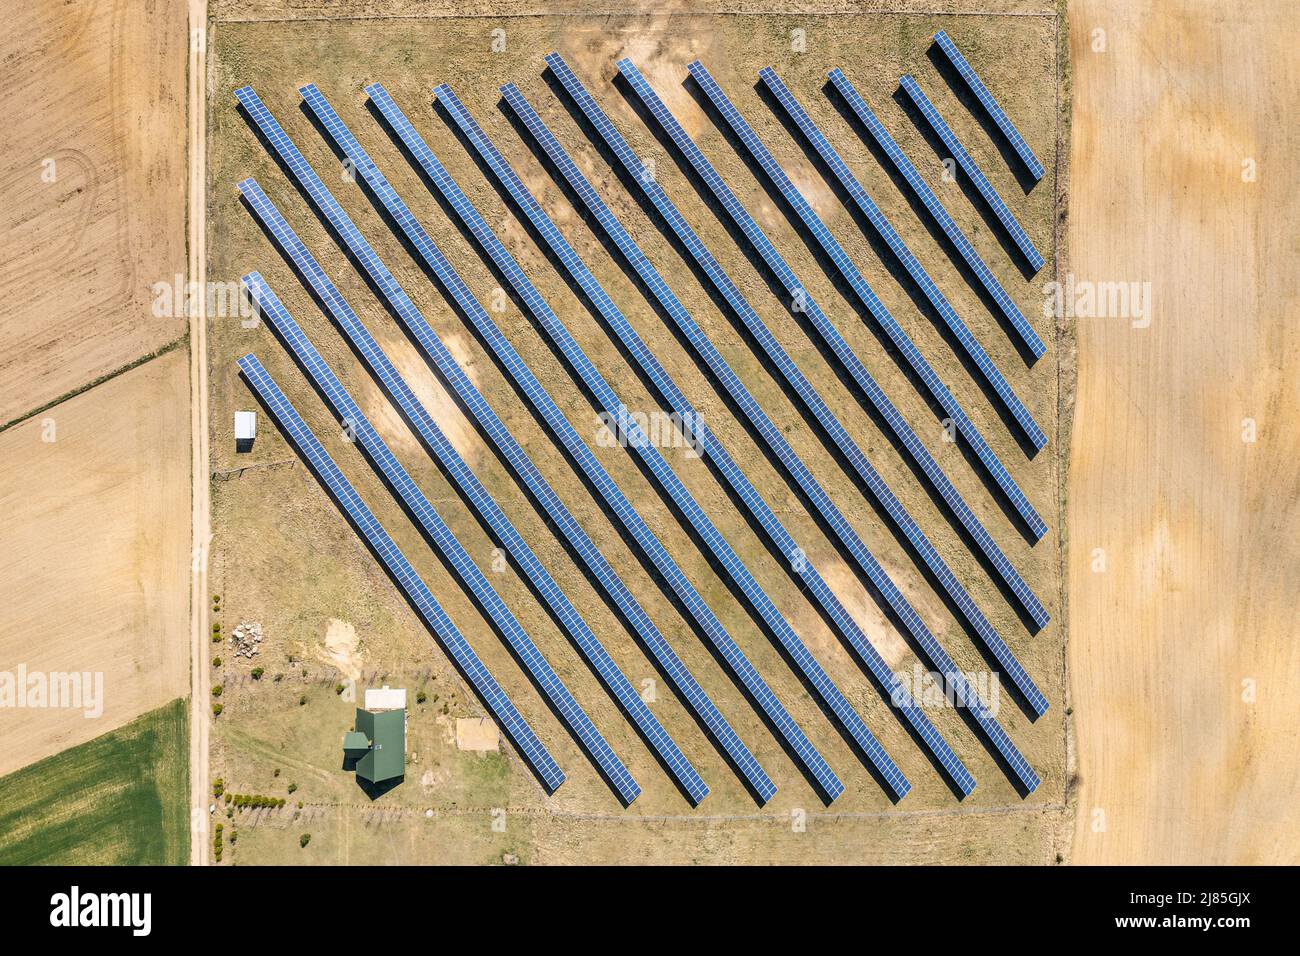 Ferme solaire vue aérienne, rangées de panneaux PV par une petite maison Banque D'Images